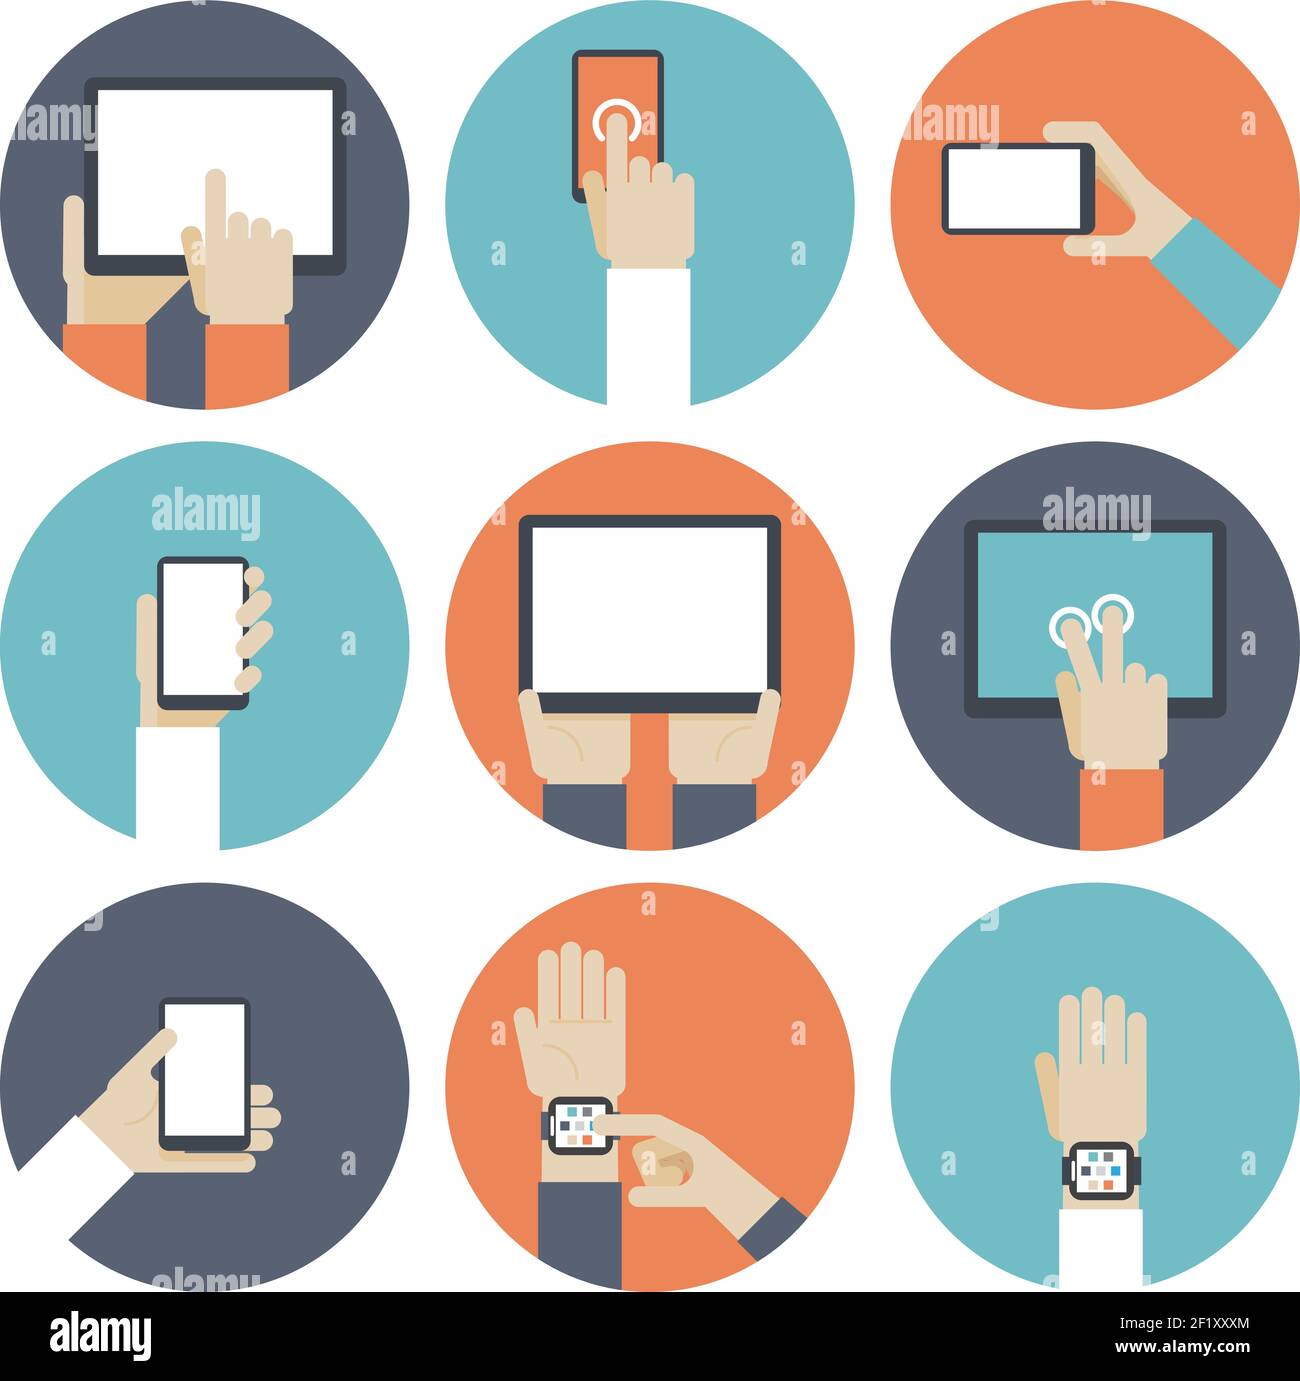 Geräte in der Hand, über Touchscreen. Smart Watch, eBook und Monitor, Touchpad und Gadget, Smartphone und Tablet. Vektorgrafik Stock Vektor